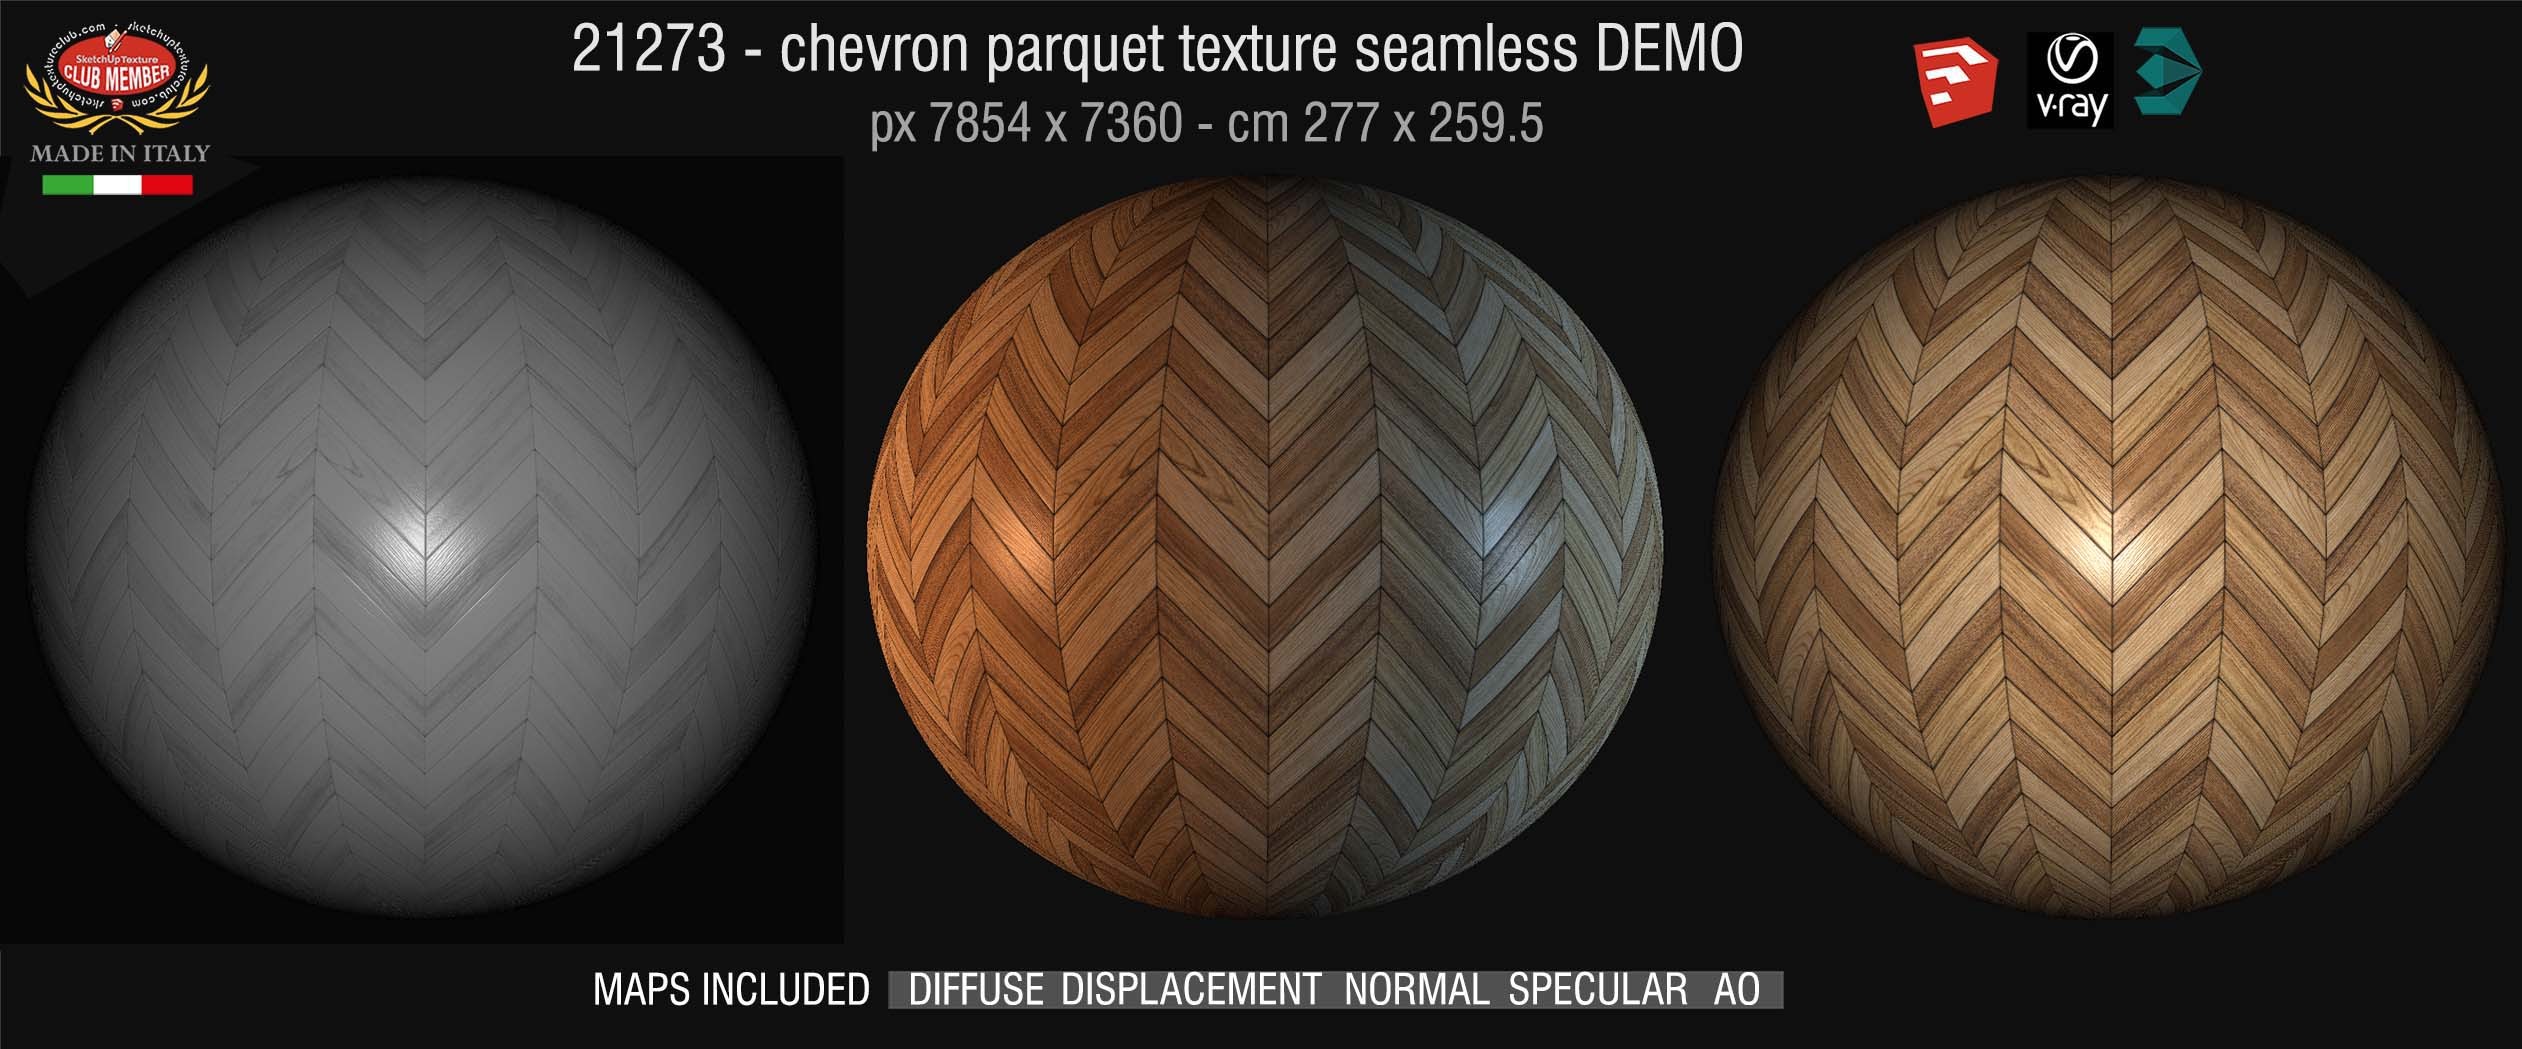 21273 HR Chevron parquet texture + maps DEMO